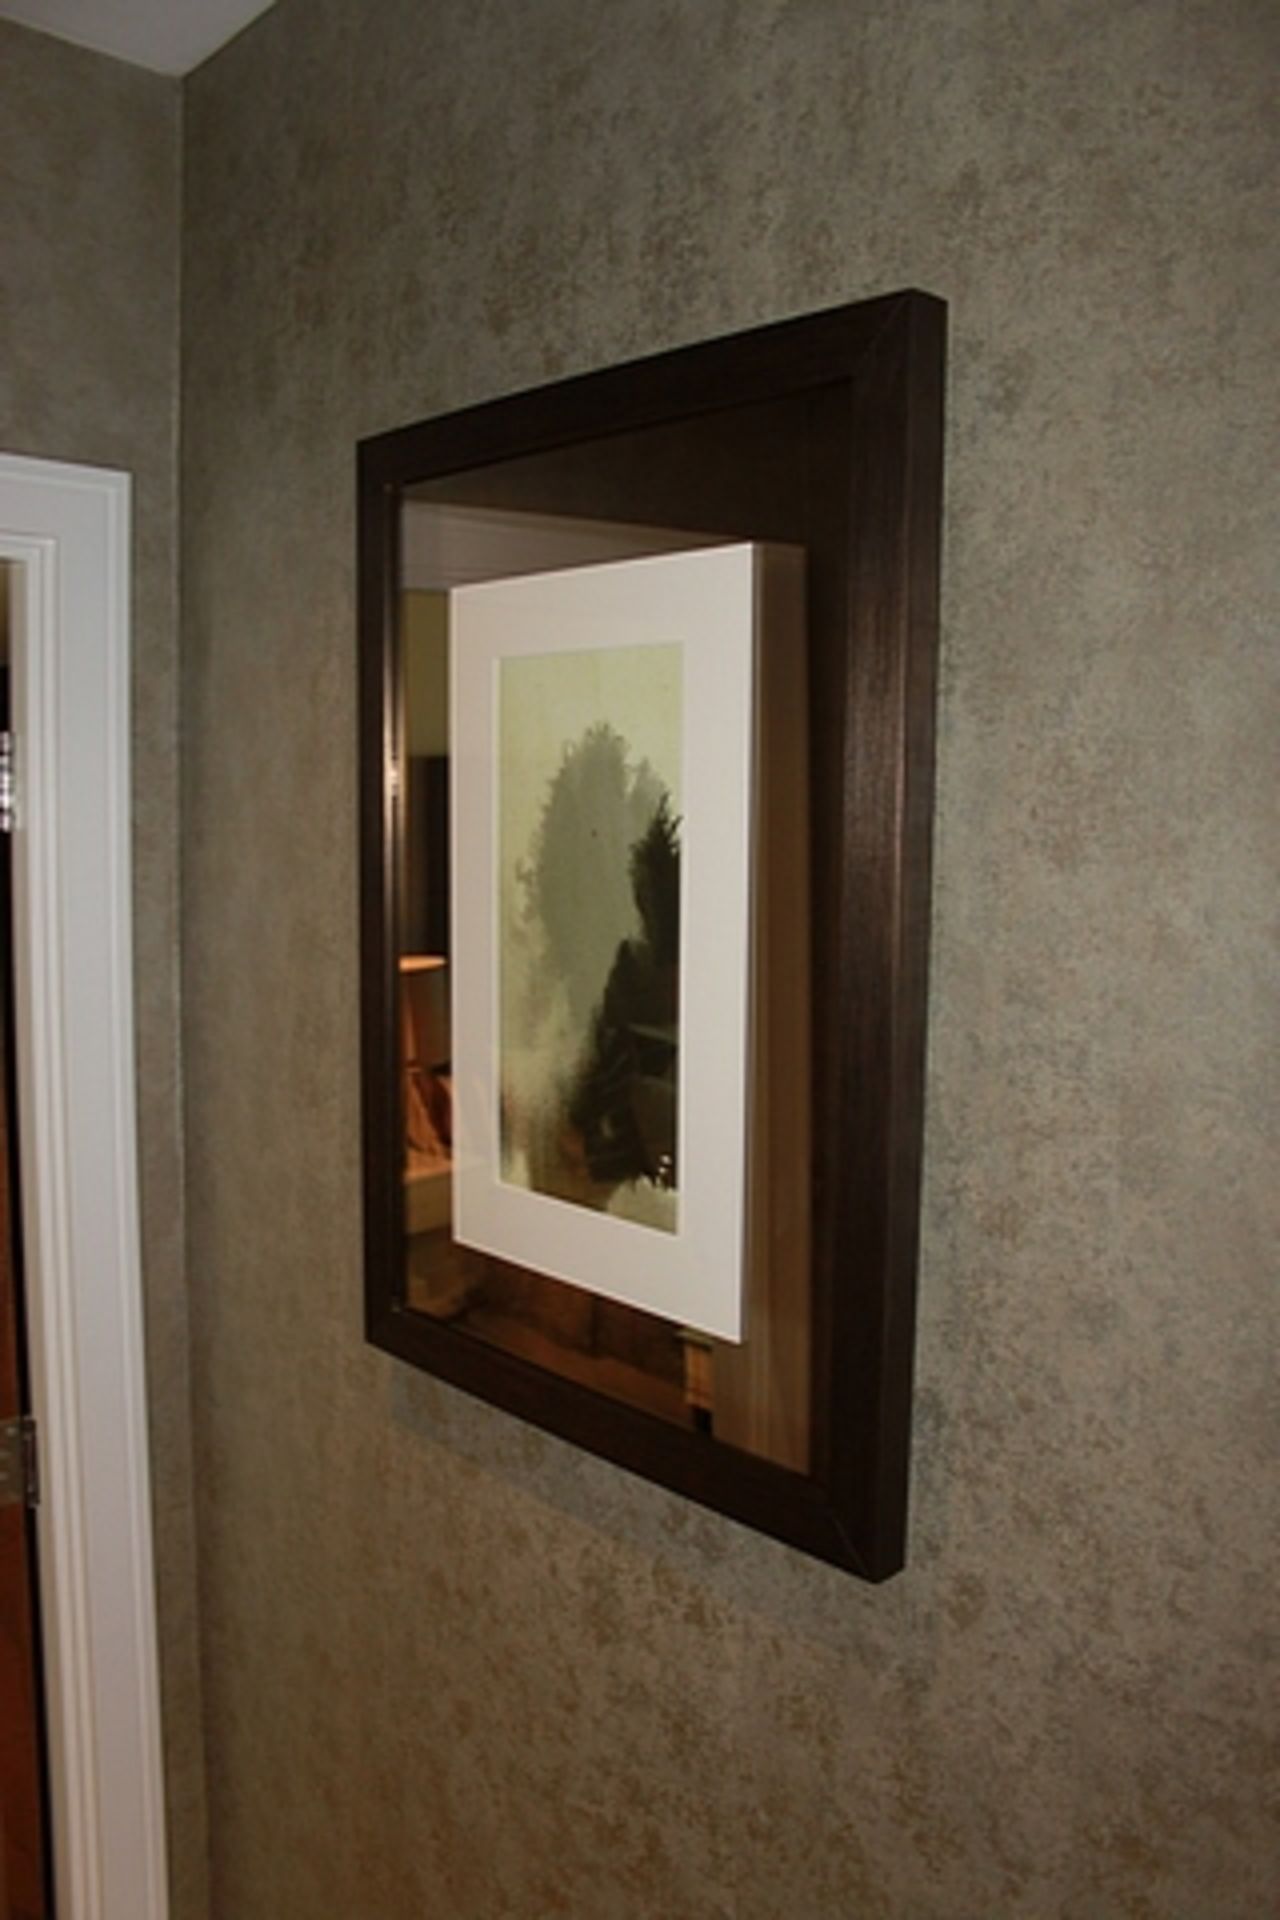 A pair of metal framed wall art 550mm x 550mm